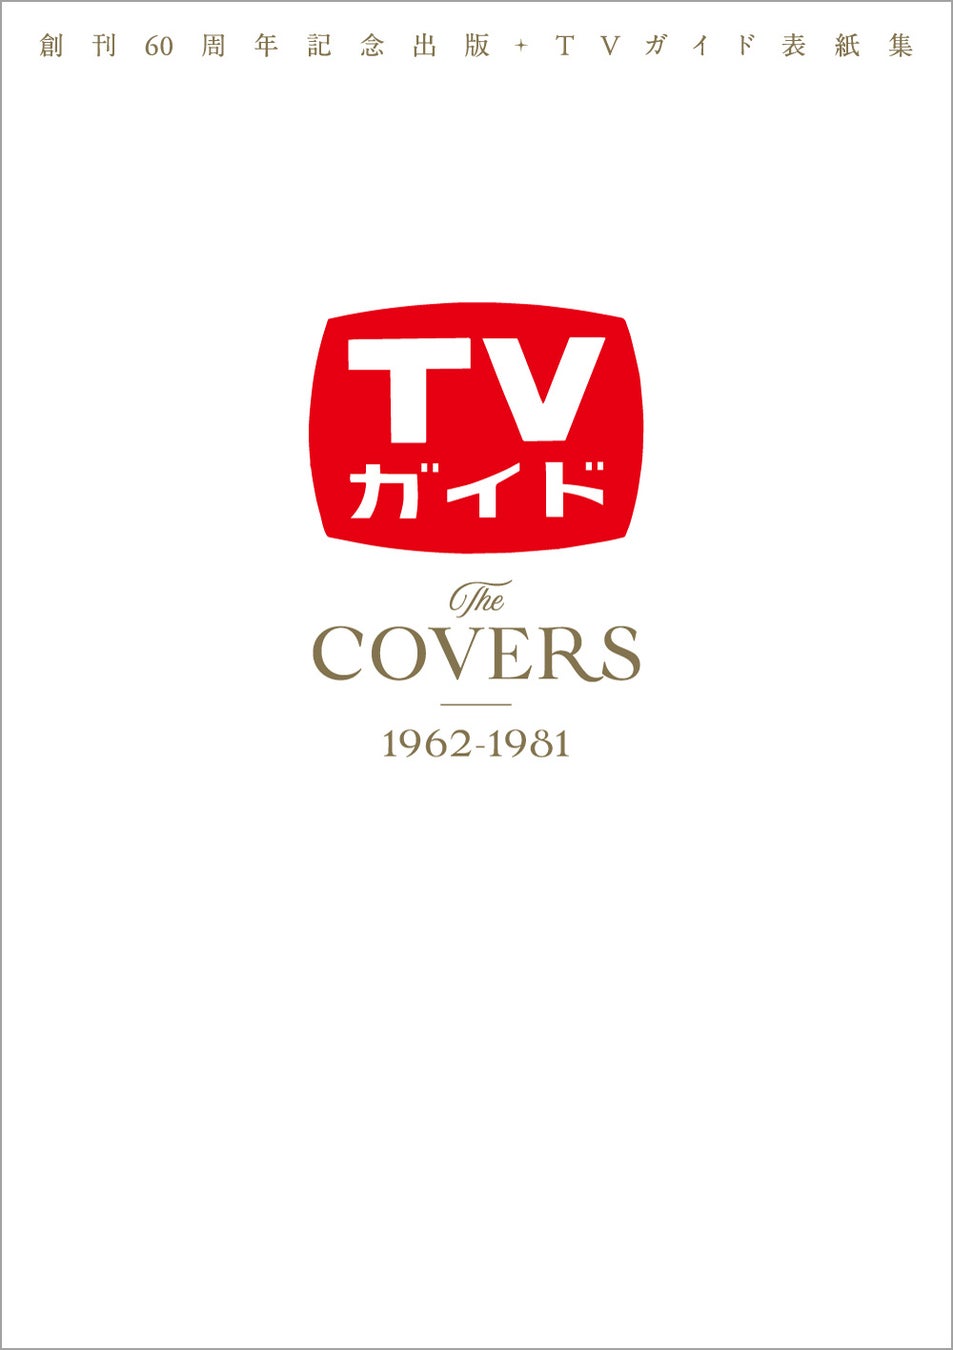 創刊60周年を迎えた「TVガイド」の表紙を一挙に振り返る！ 第1弾は1962年の創刊号から漫才ブームが巻き起こった1981年まで